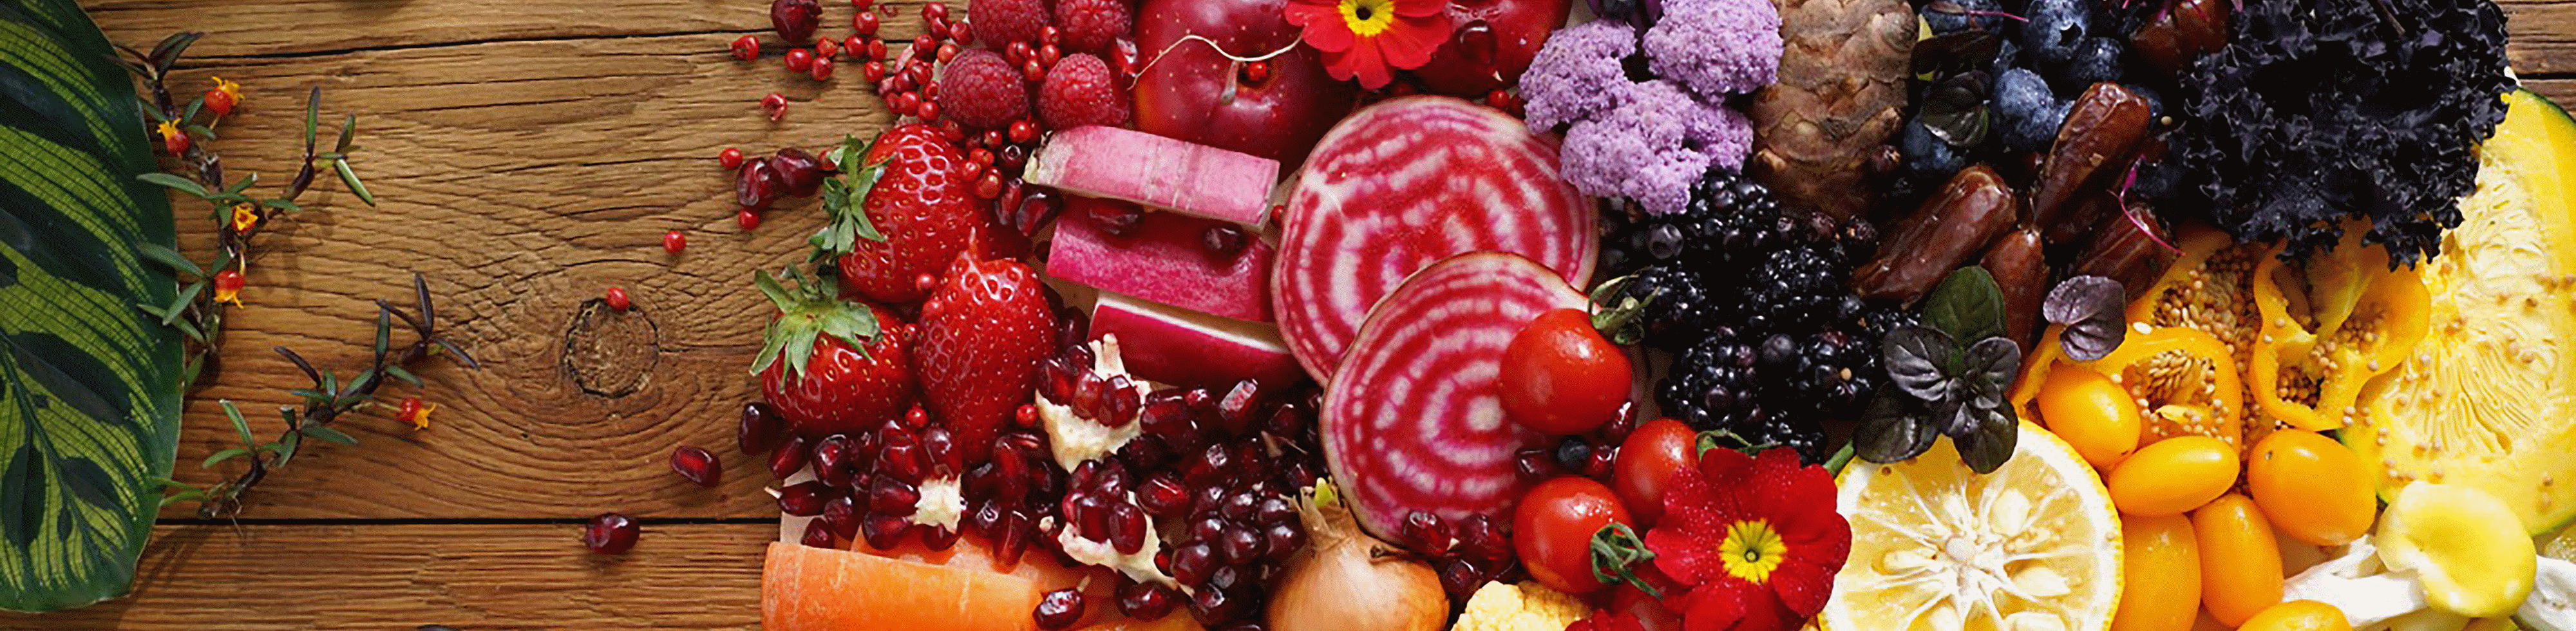 Imagen de frutas y verduras coloridas capturada con esta lente con alta resolución en todo el encuadre